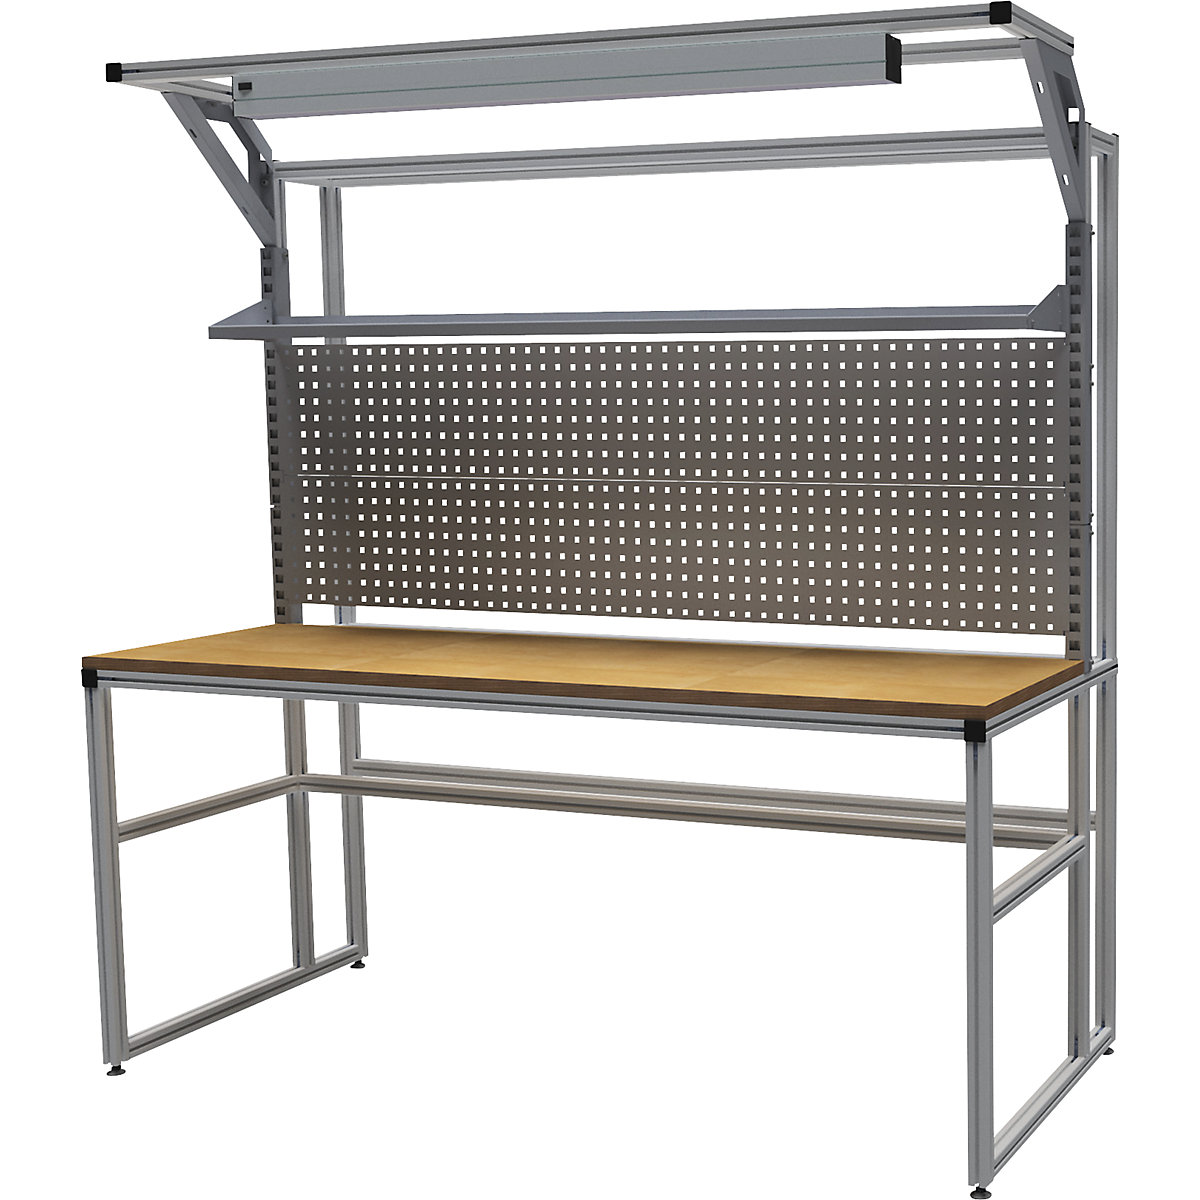 Stół warsztatowy aluminiowy workalu&reg; z modułem systemowym, jednostronny - bedrunka hirth